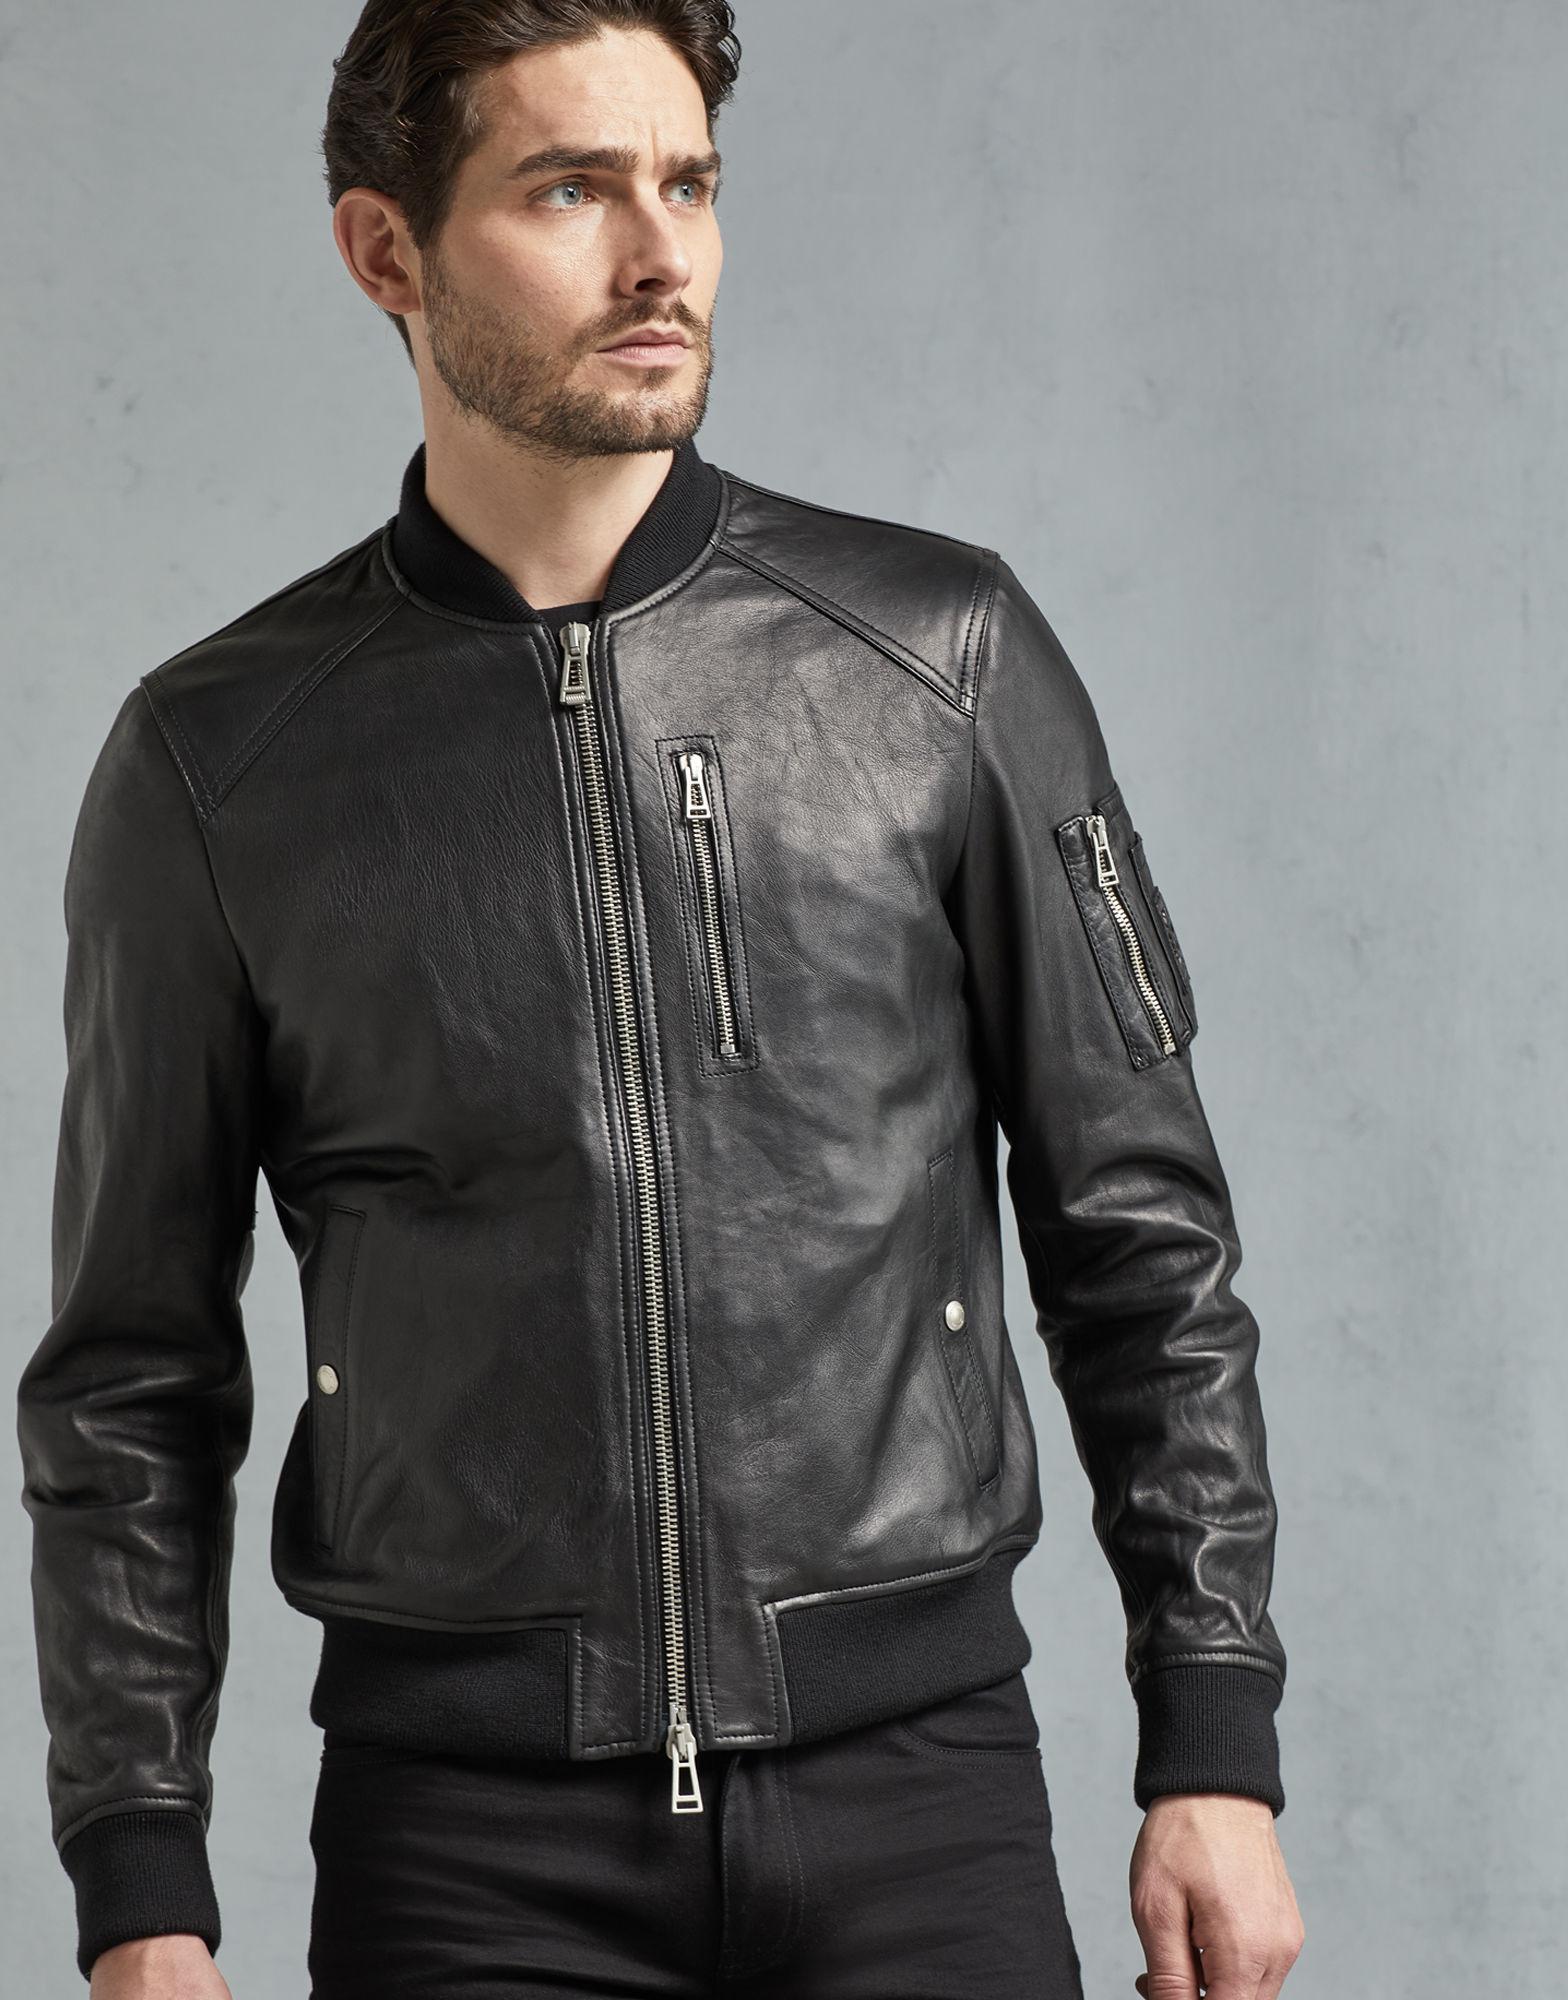 Belstaff Leather Clenshaw 2.0 Jacket in Vintage Pewter (Black) for Men -  Lyst